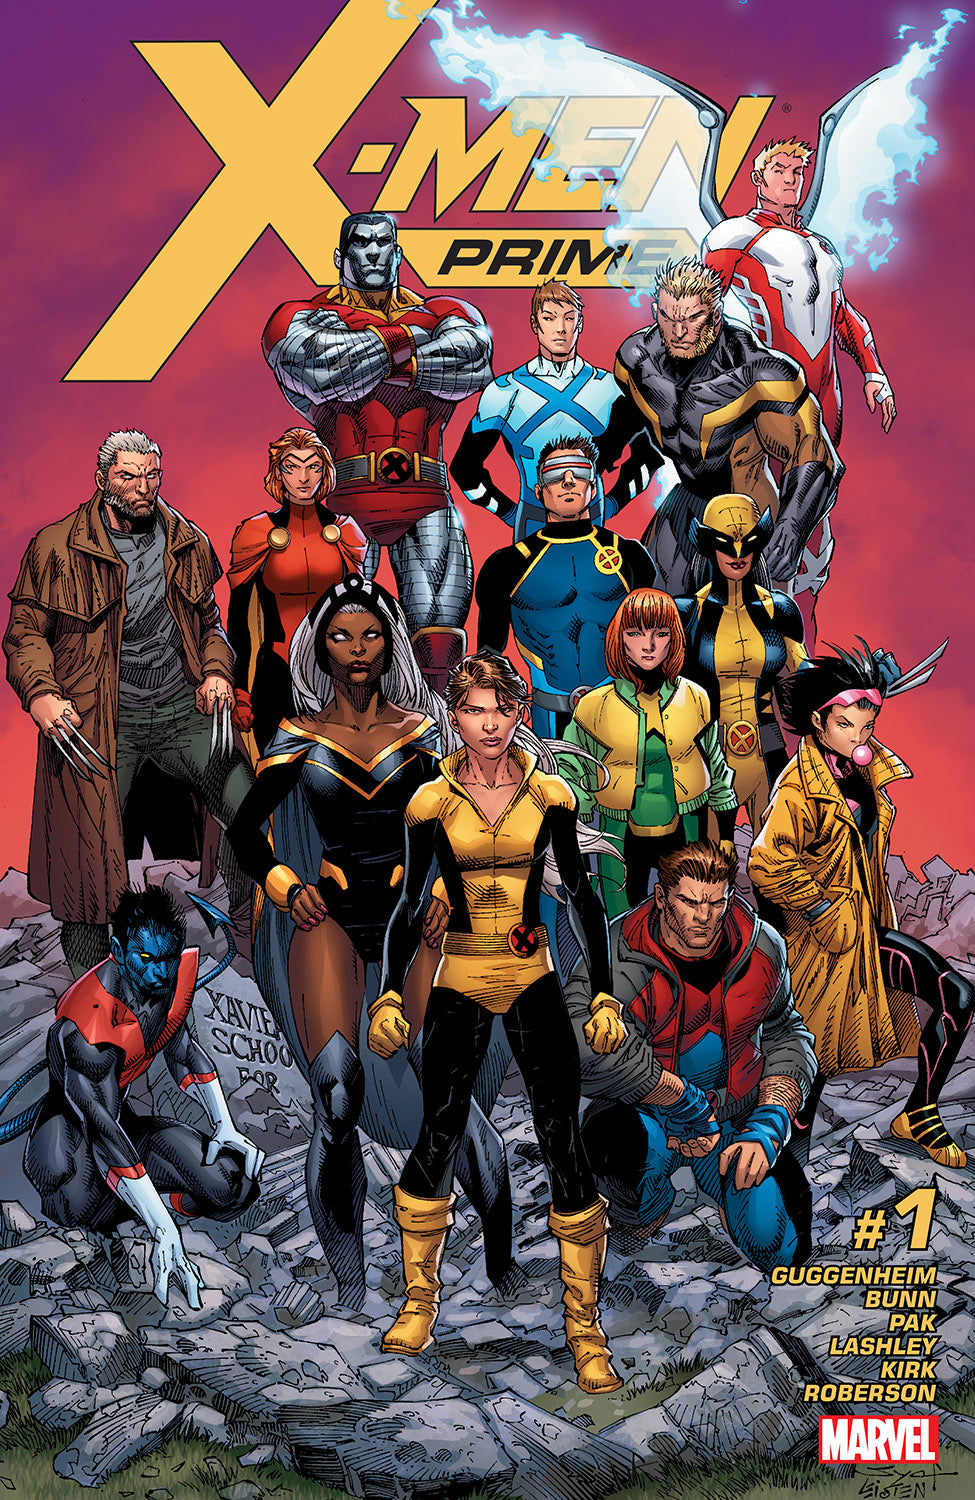 X-Men Prime #1